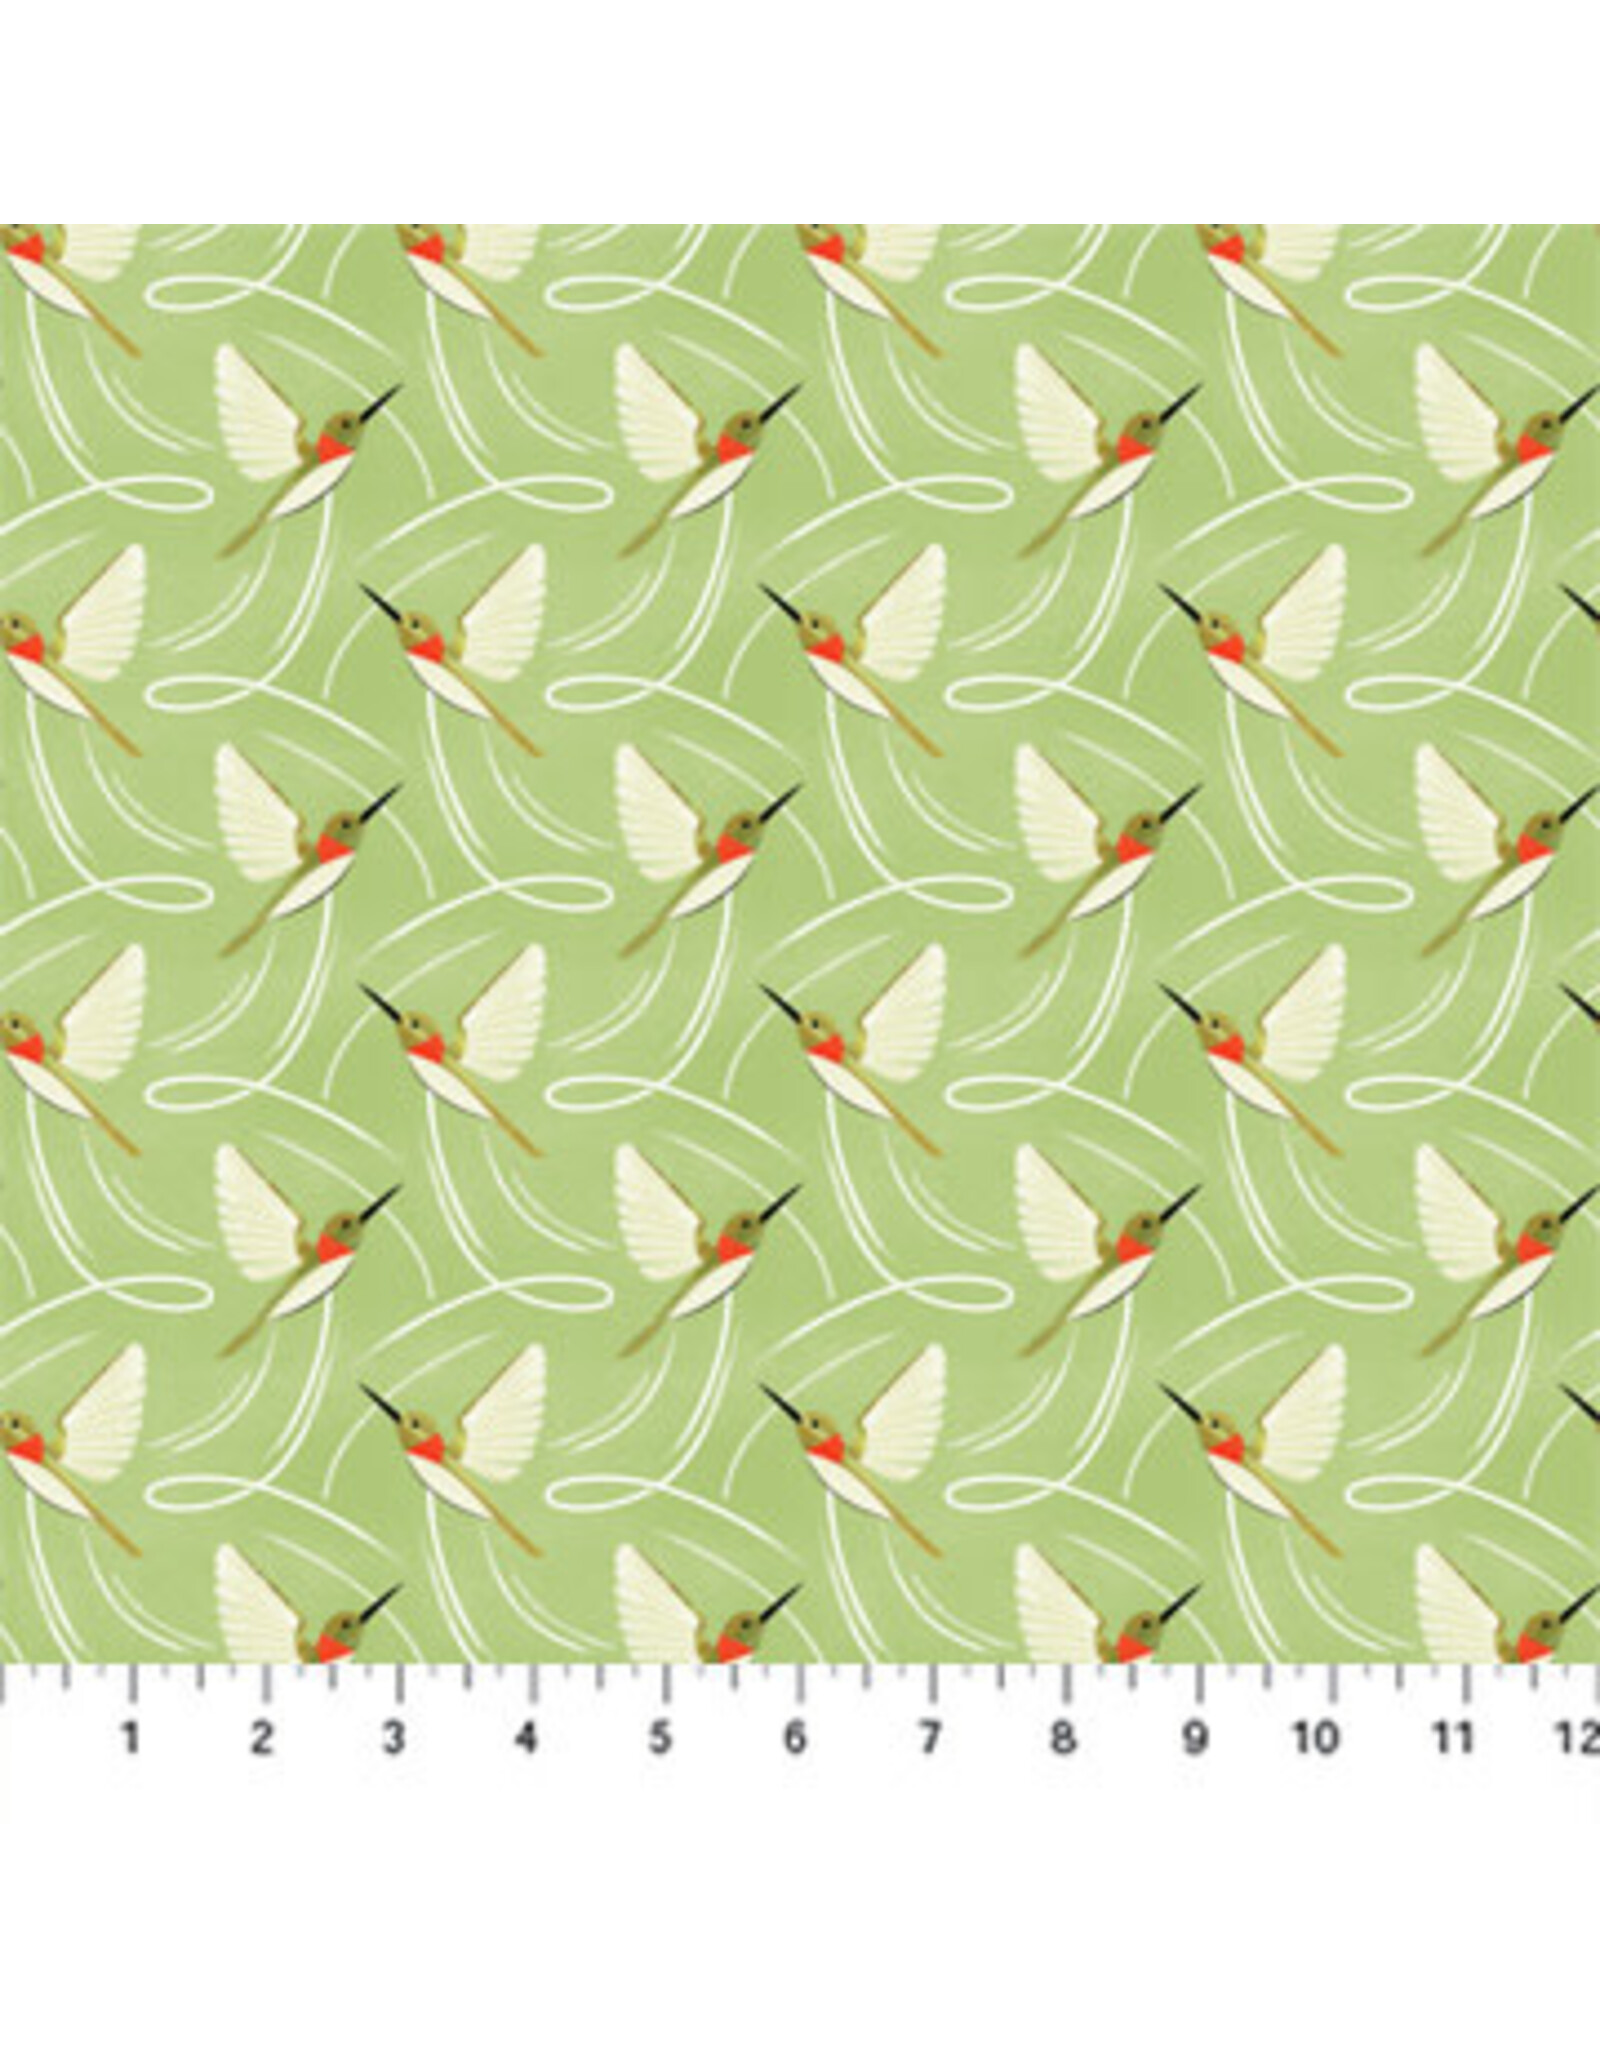 Figo Sunday - Hummingbirds Green coupon (± 34 x 110 cm)